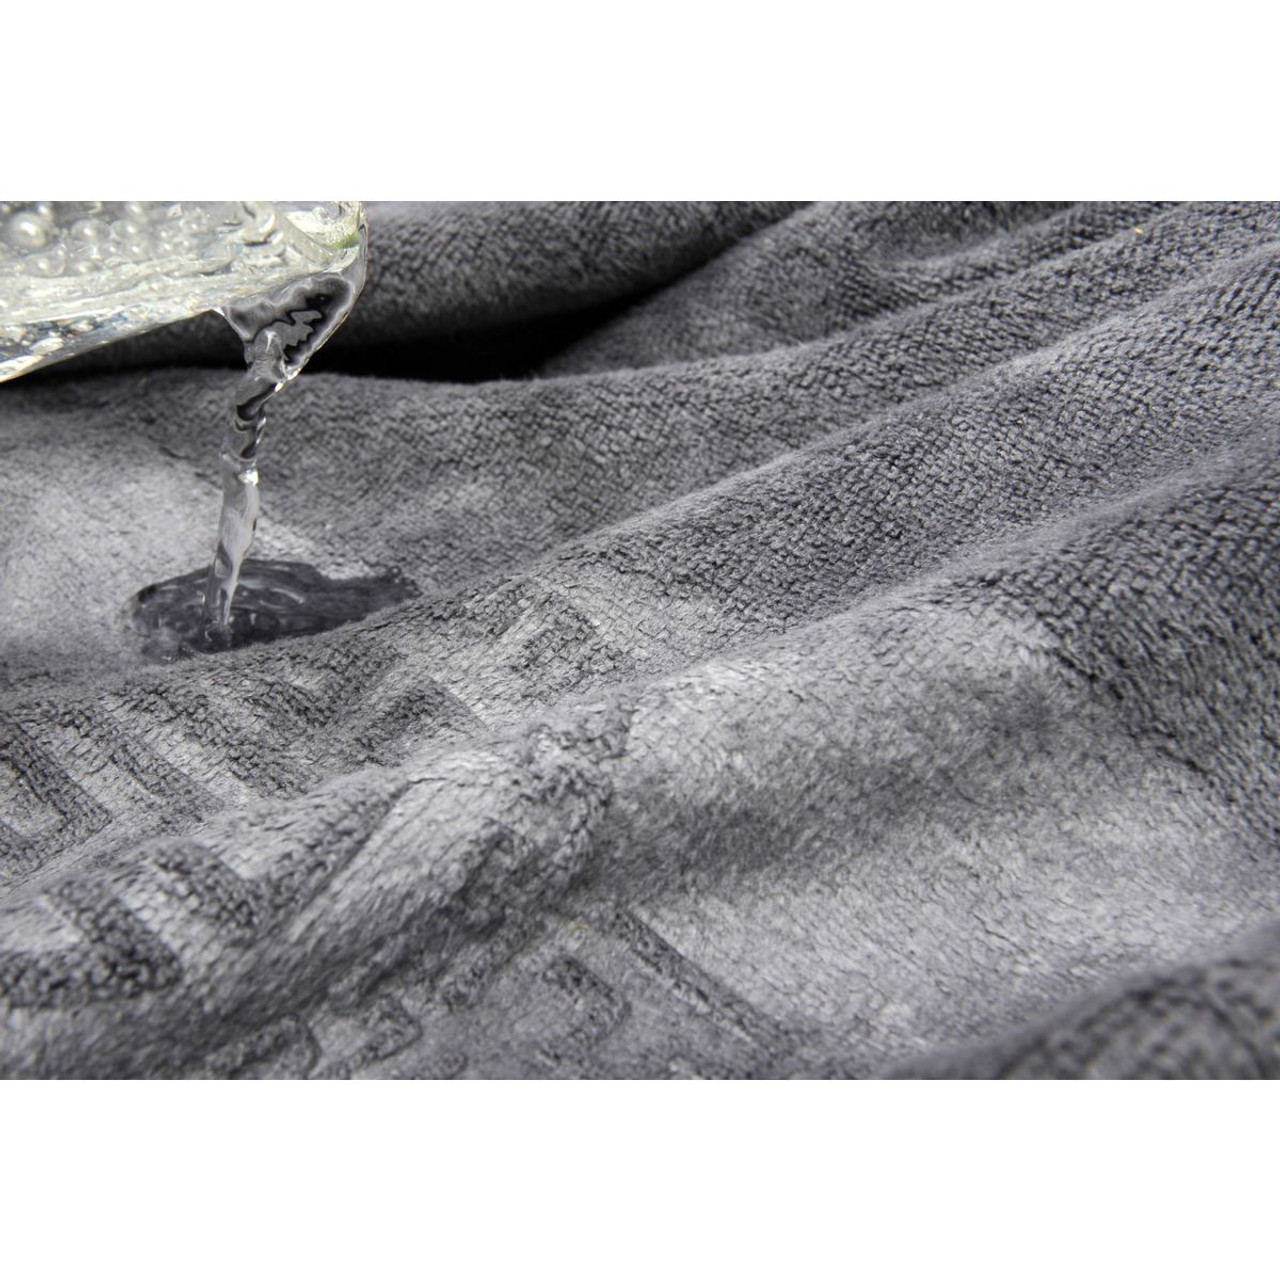 Dan River® 4-Piece Embossed Microfiber Bath Towel Set product image